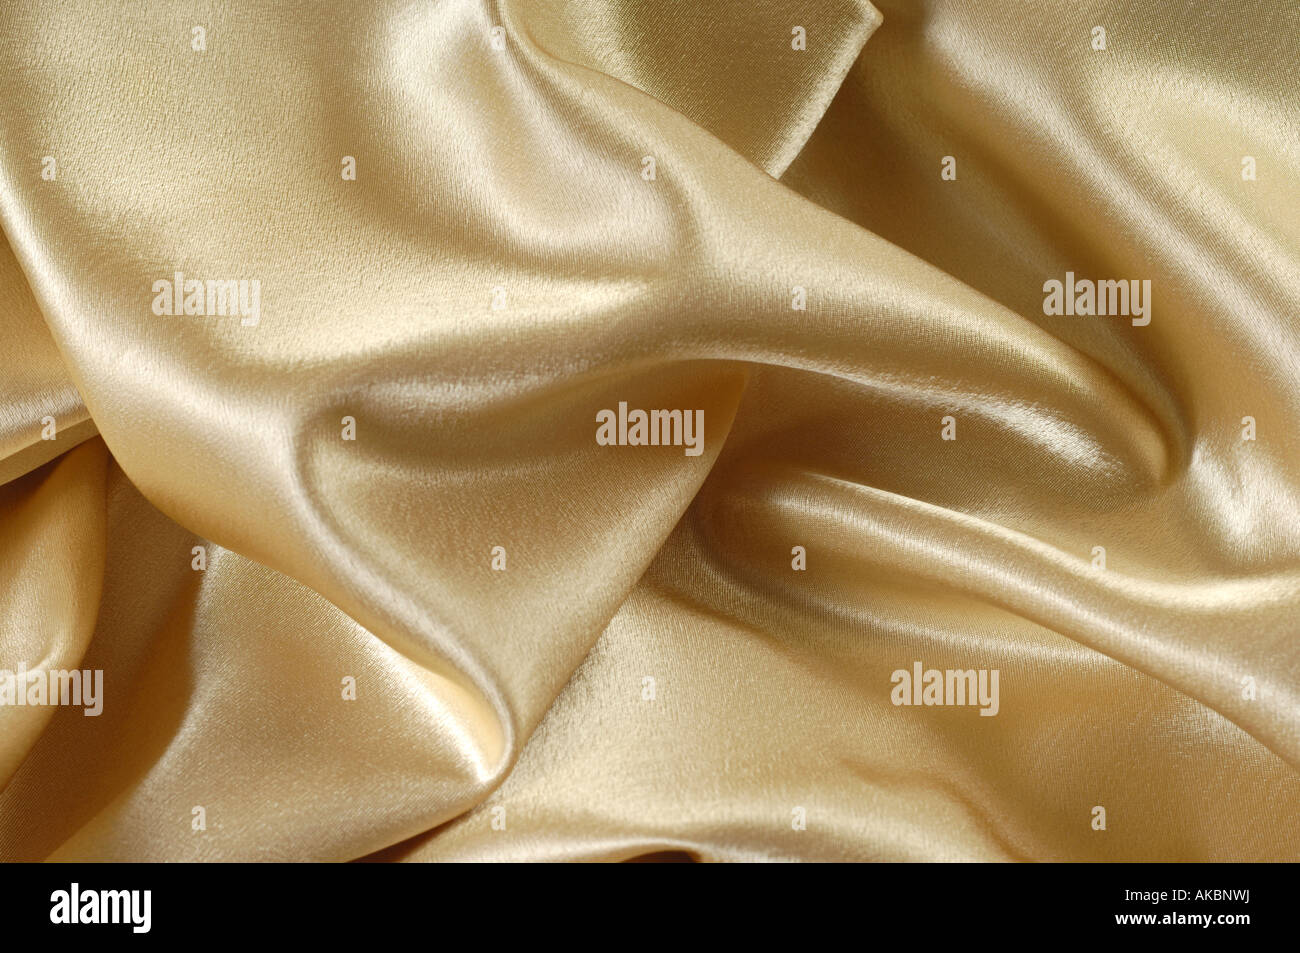 Shiny golden fabric Stock Photo